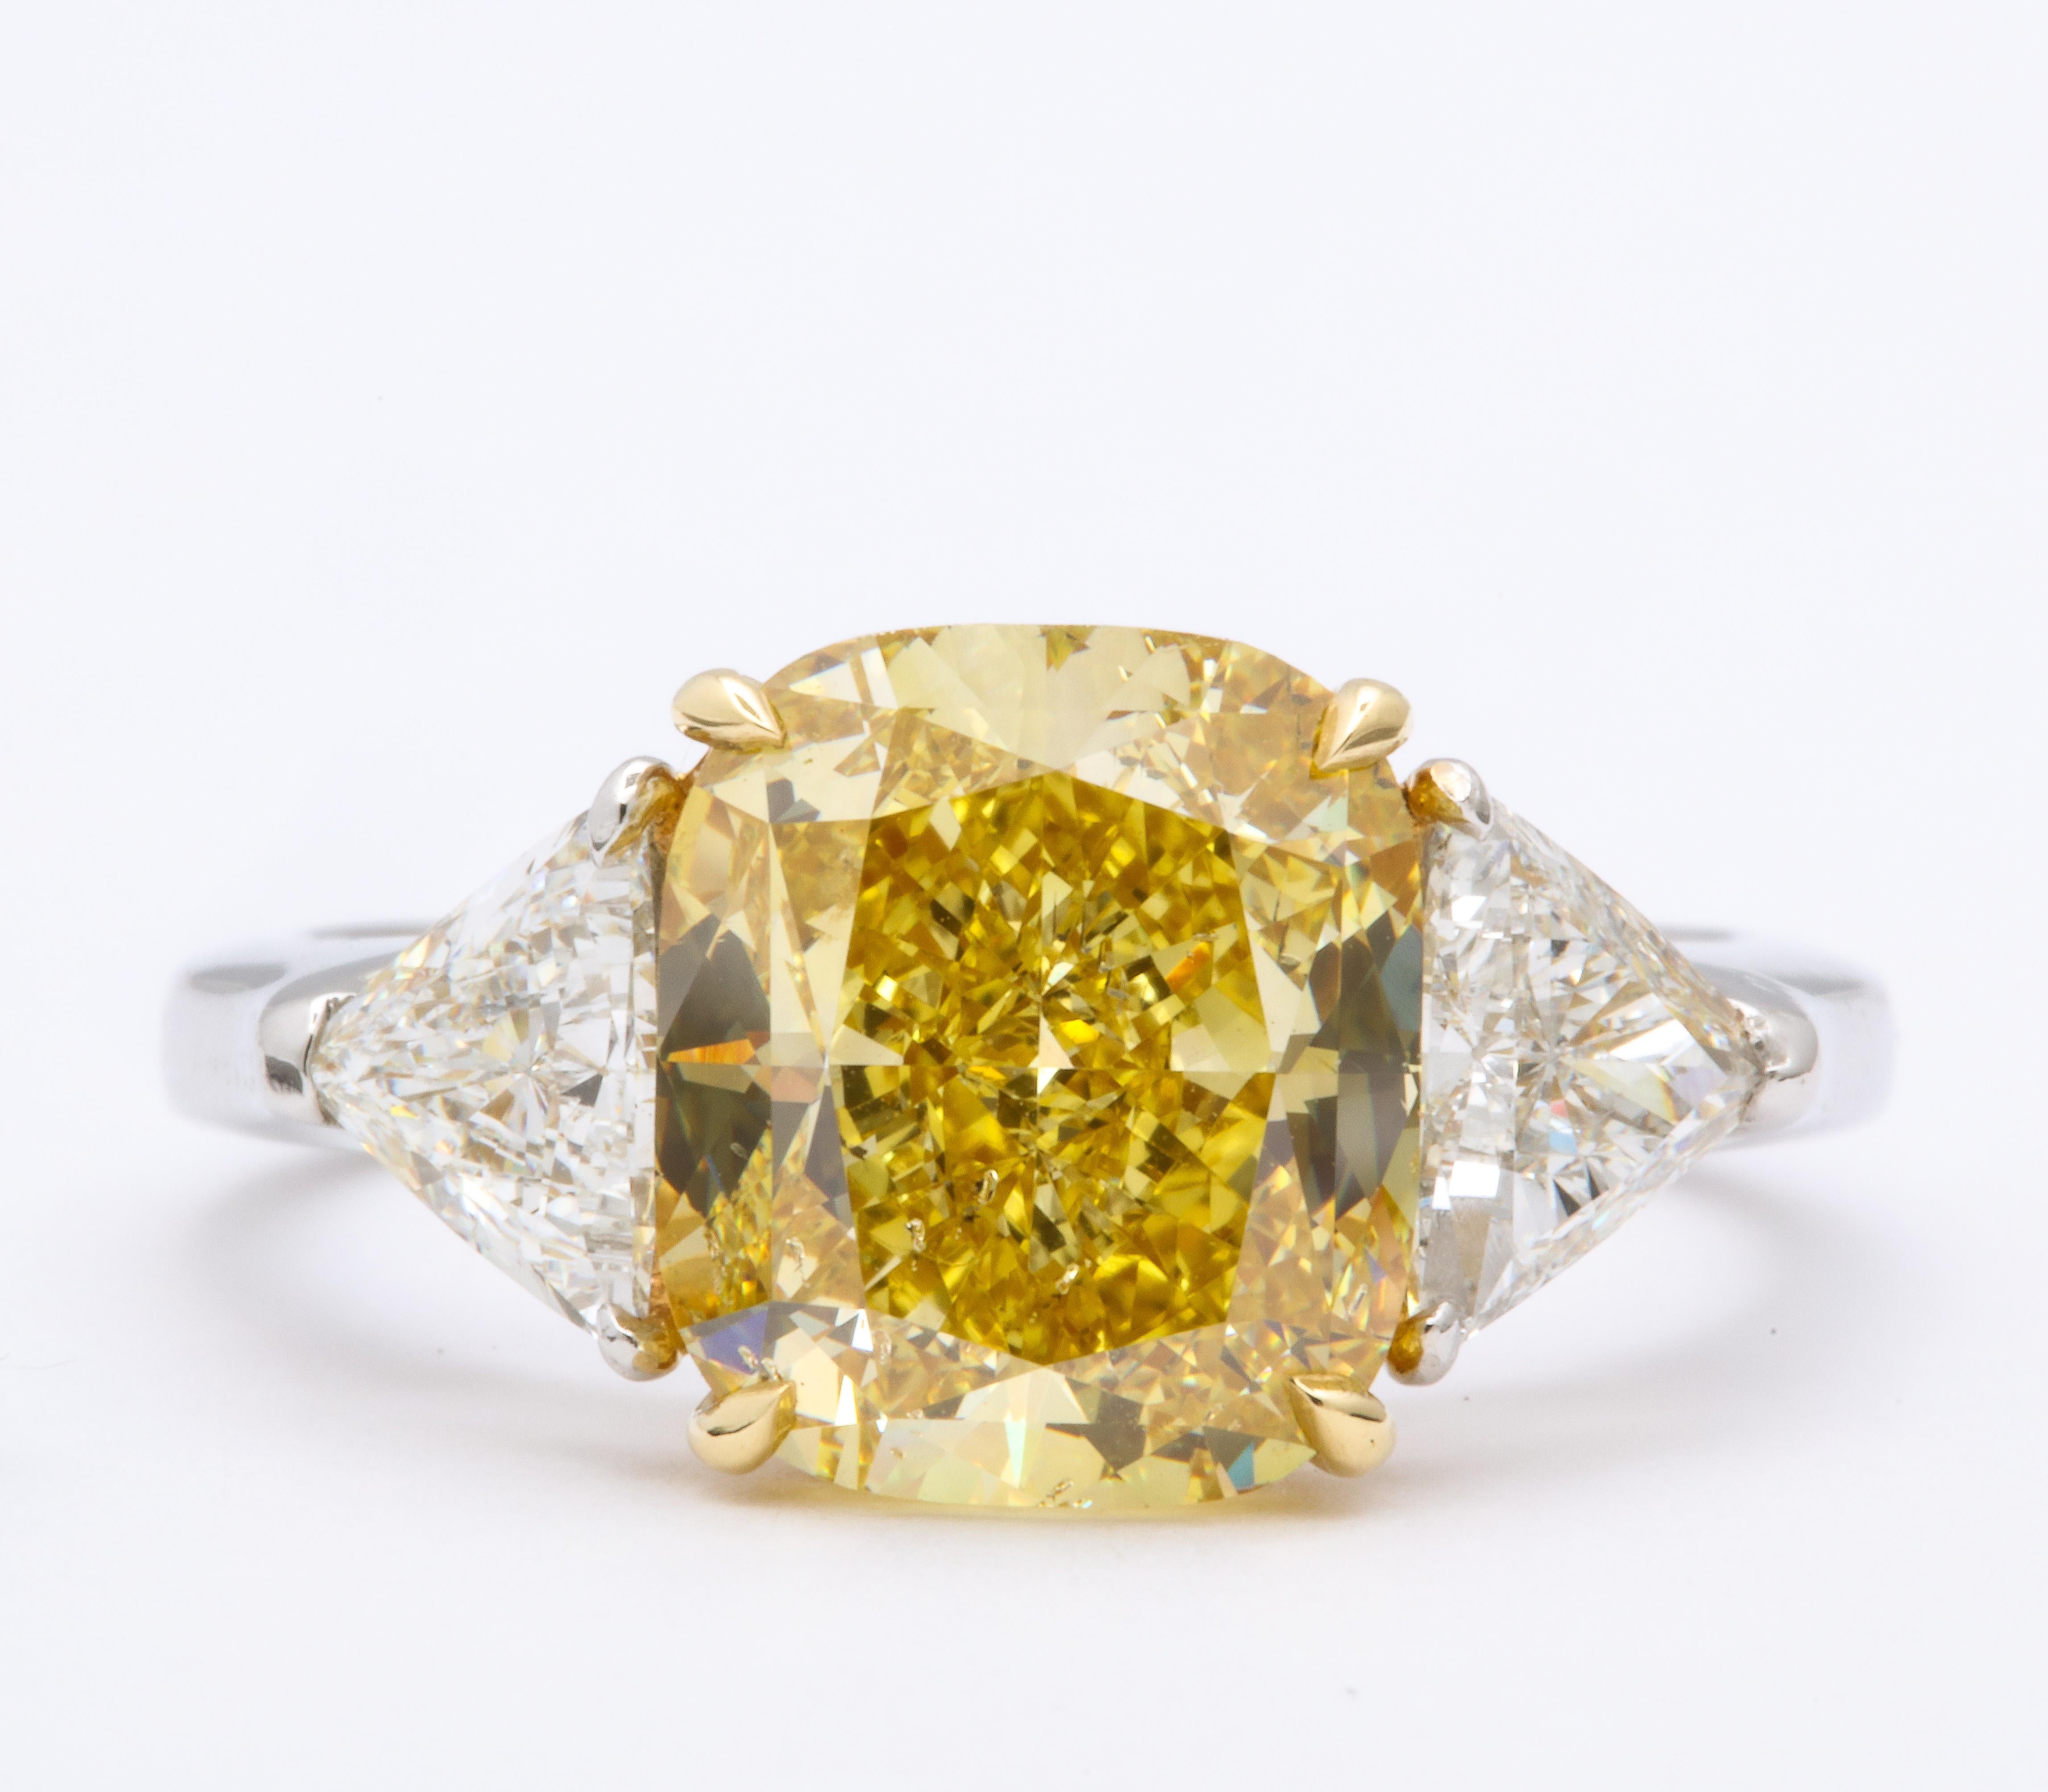 
Superbe diamant coussin de 4,30 carats, certifié par le GIA, de couleur jaune intense, SI2. 

Sertie de 1,10 carats de diamants latéraux blancs de taille trillion. 

Platine et jaune 18k

Actuellement de taille 6, cette bague peut facilement être